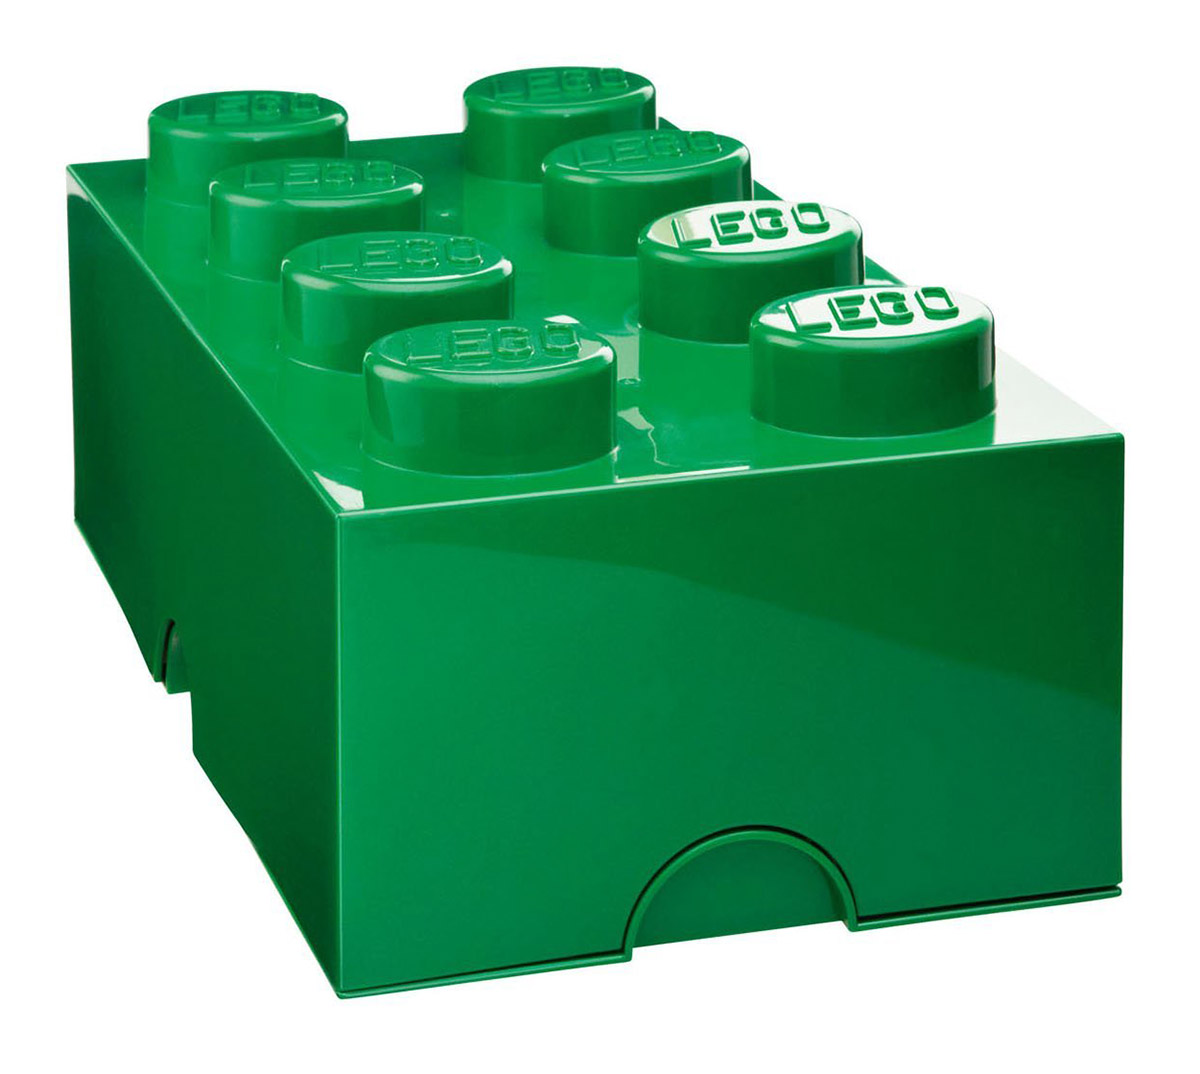 LEGO Rangement 40041734 pas cher - Brique de rangement verte 8 Plots